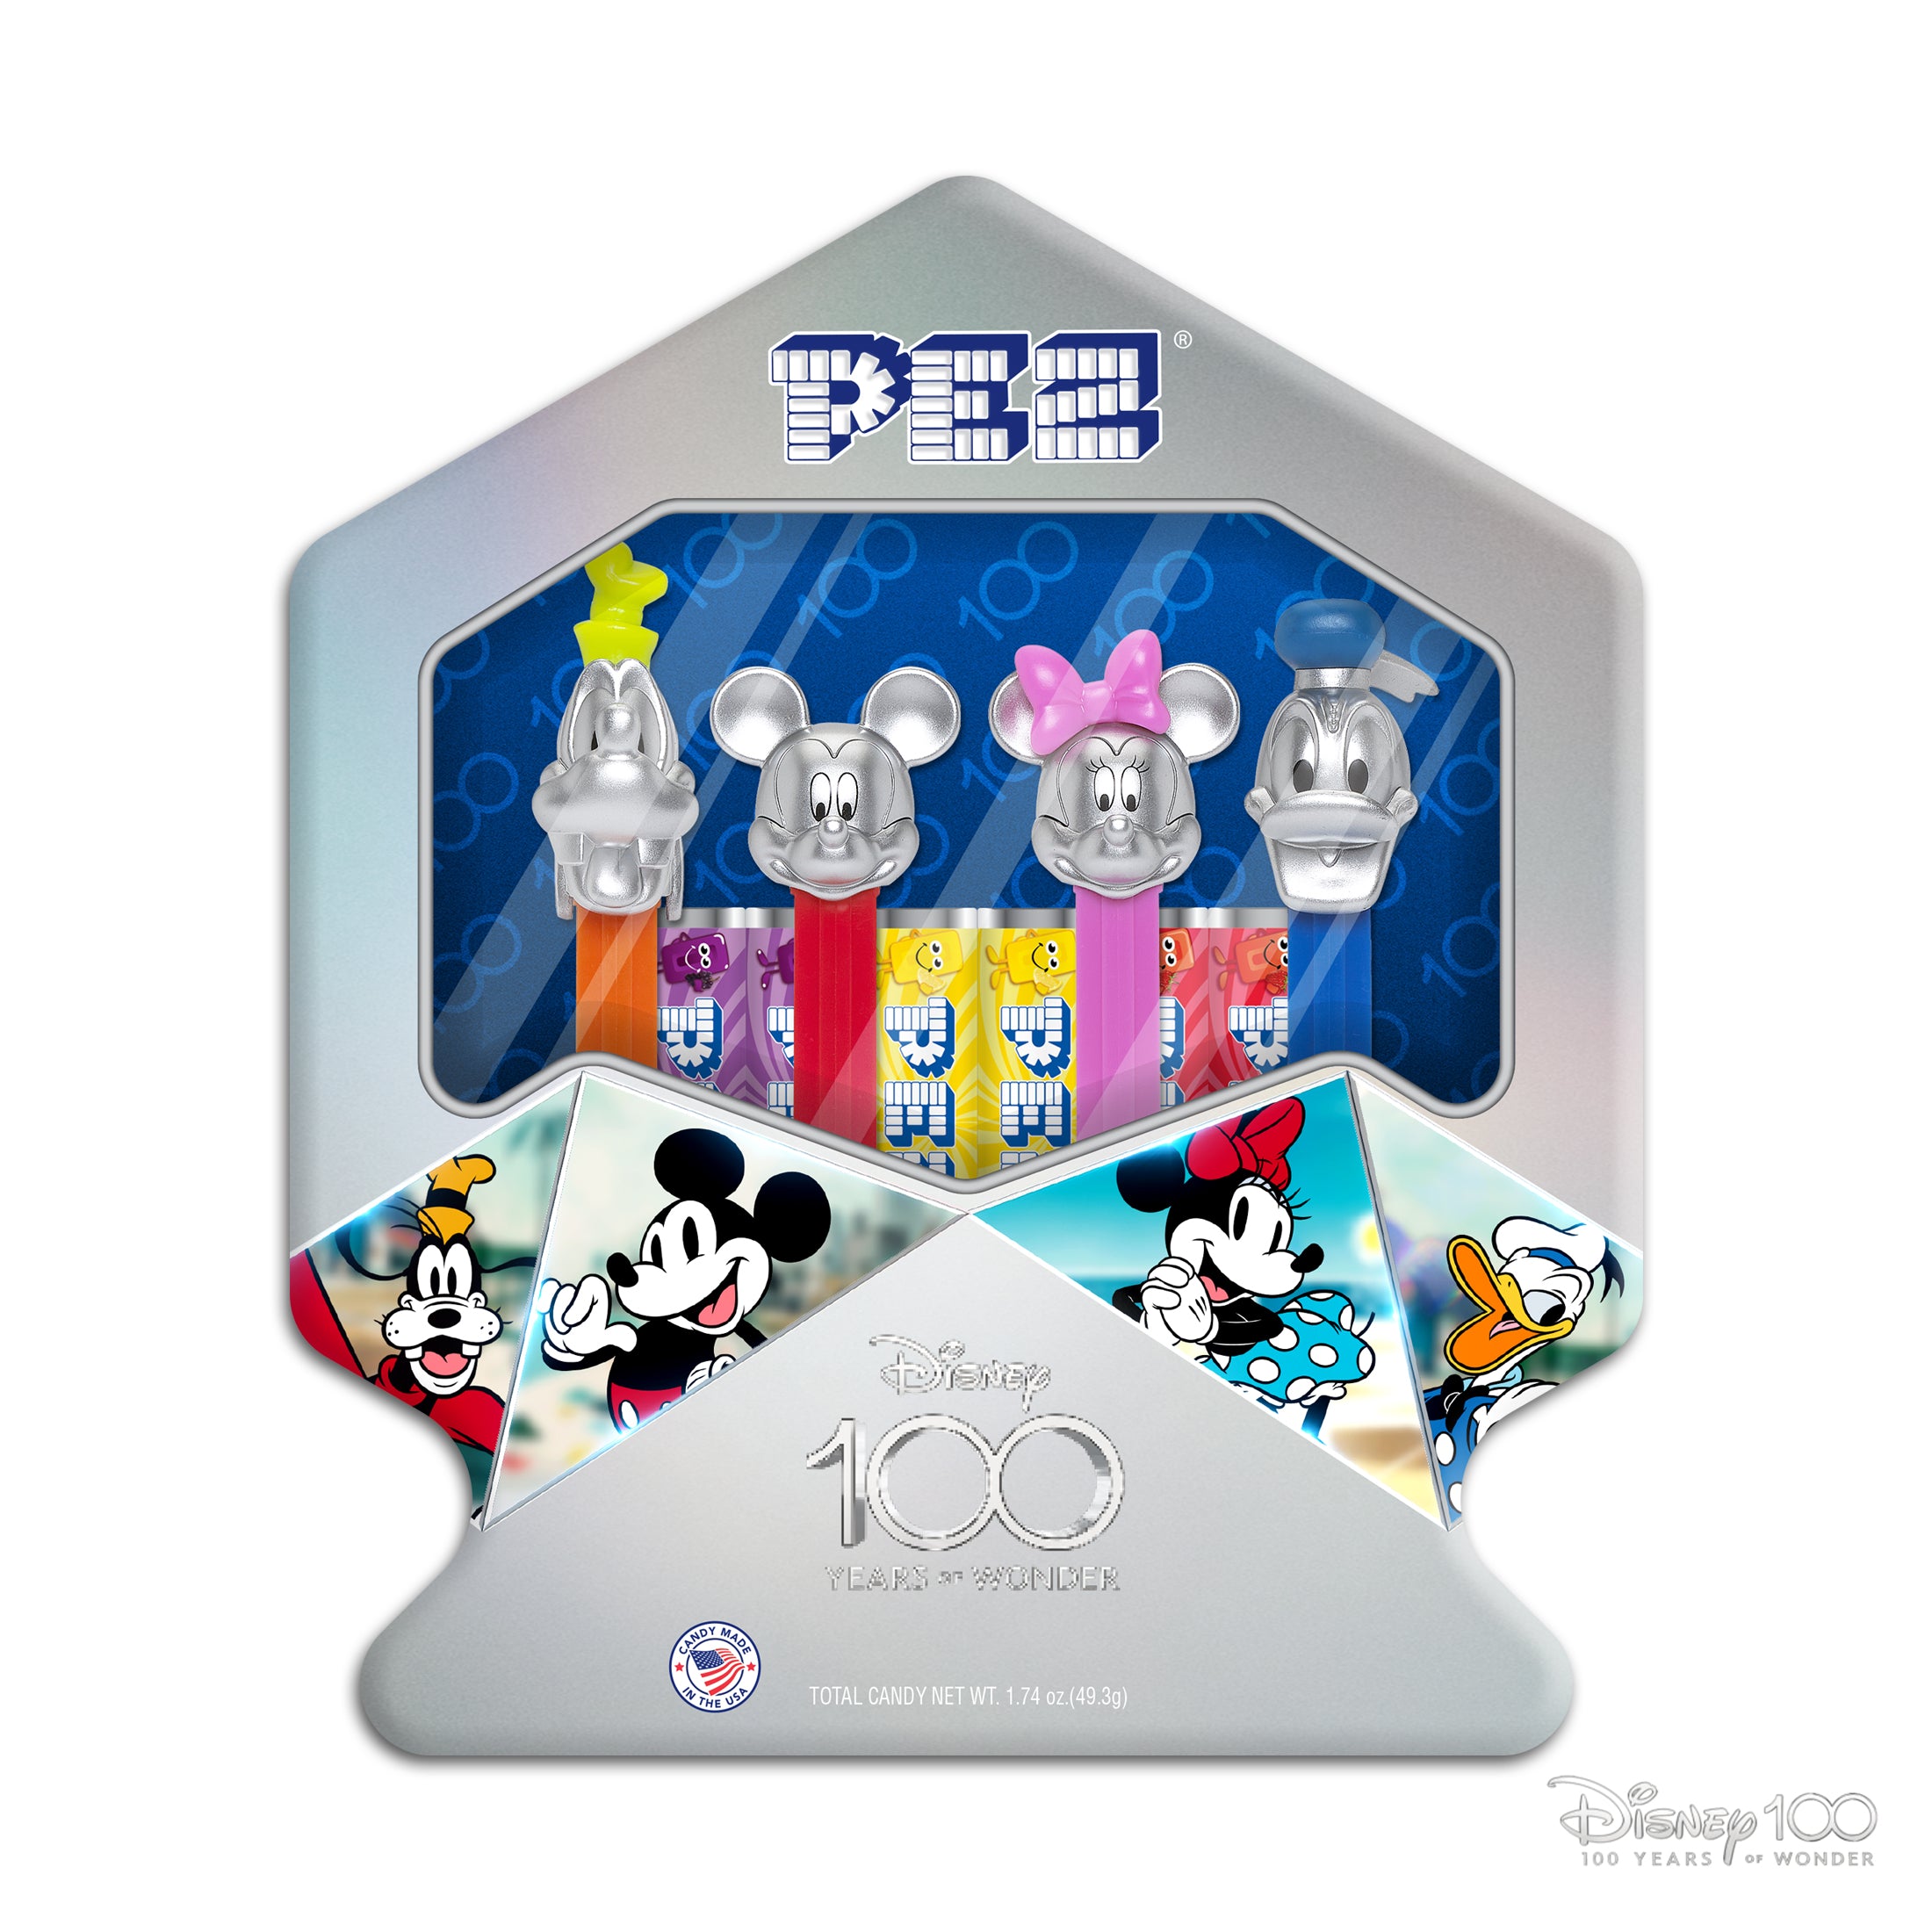 The Mandalorian™ PEZ Gift Set (The Mandalorian & The Child PEZ Dispensers)  PEZ Official Online Store – PEZ Candy